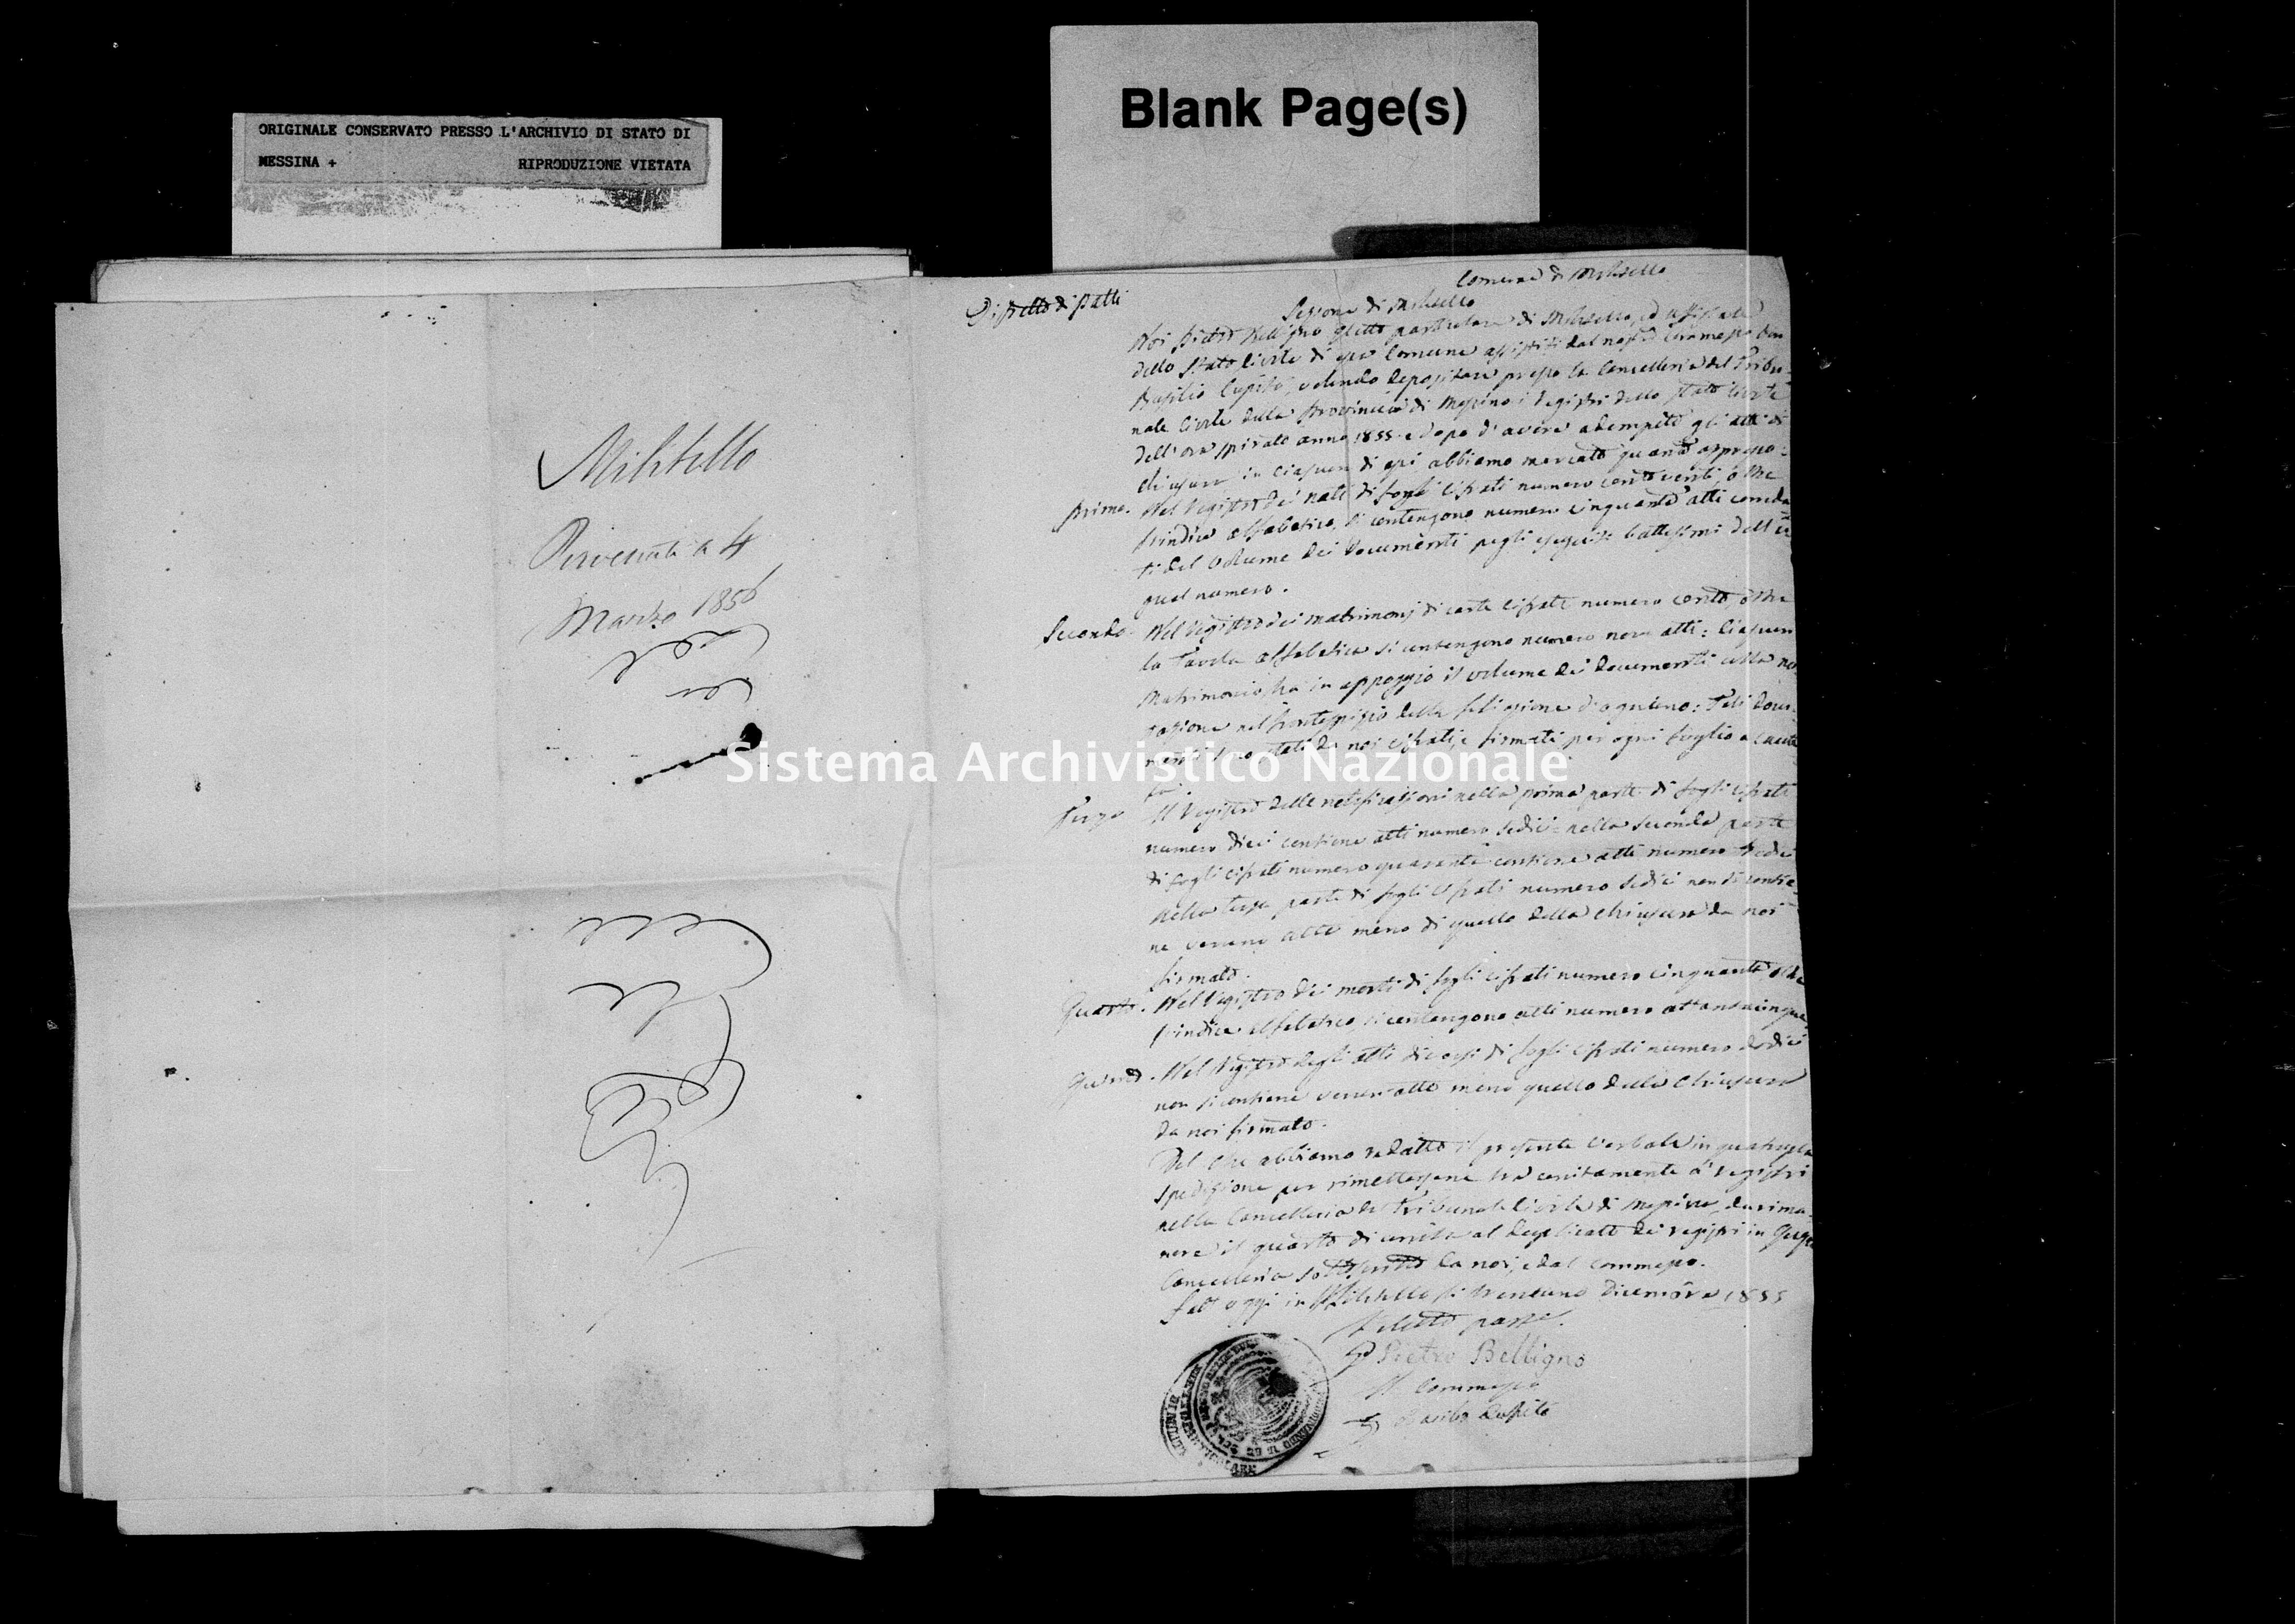 Archivio di stato di Messina - Stato civile della restaurazione - Militello - Inventario - 1856 - 744 -